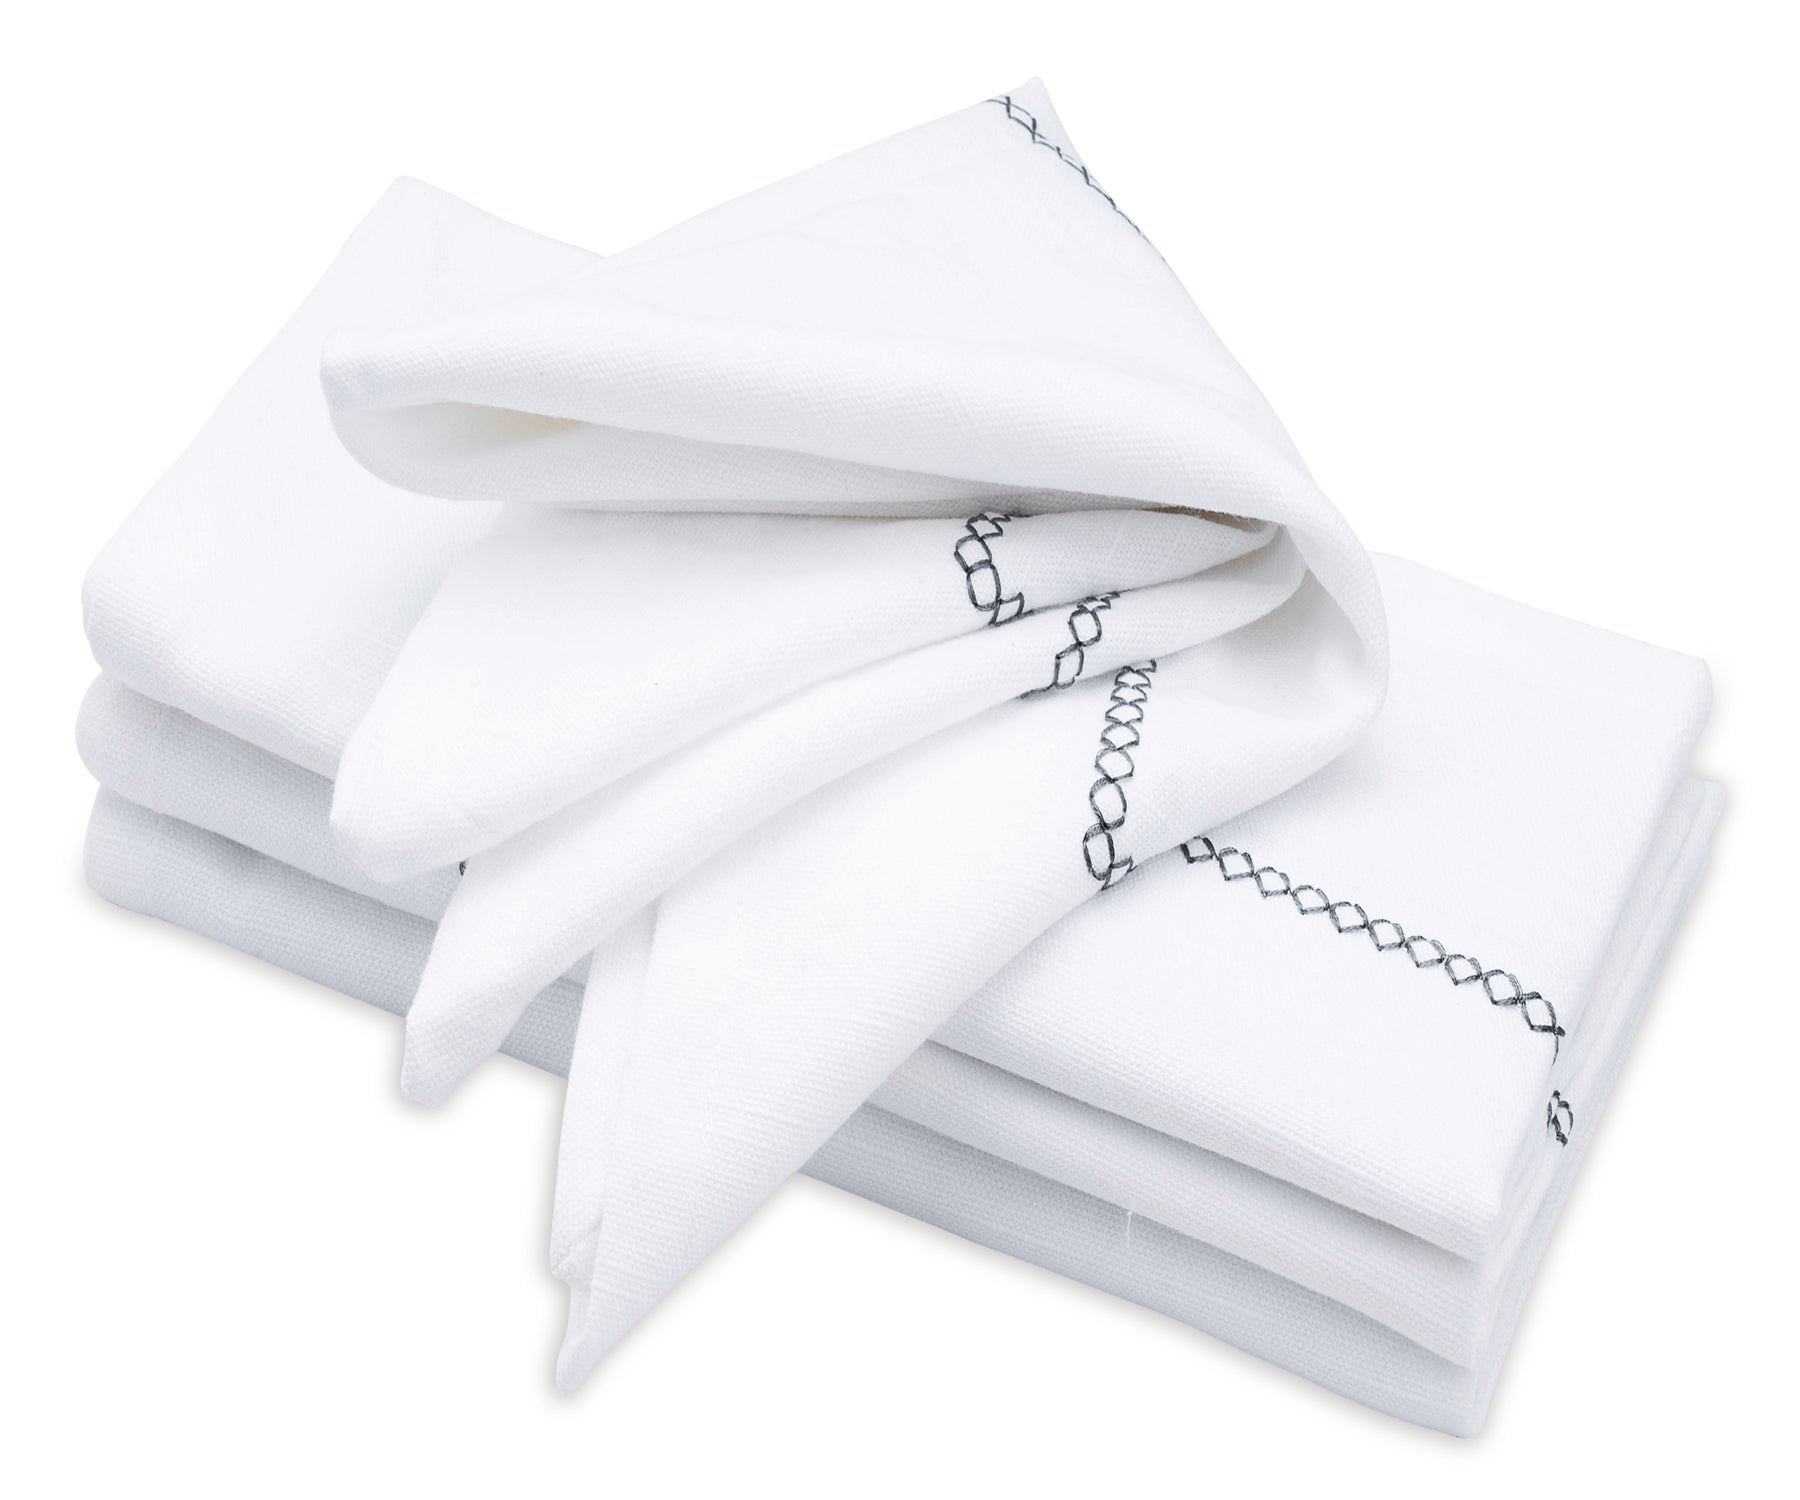 24 x 24 Inch Linen Napkins White Cloth Napkins Set of 4 Dinner Napkins  Cloth Washable White Linen Napkins White Dinner Napkins Fabric Napkins